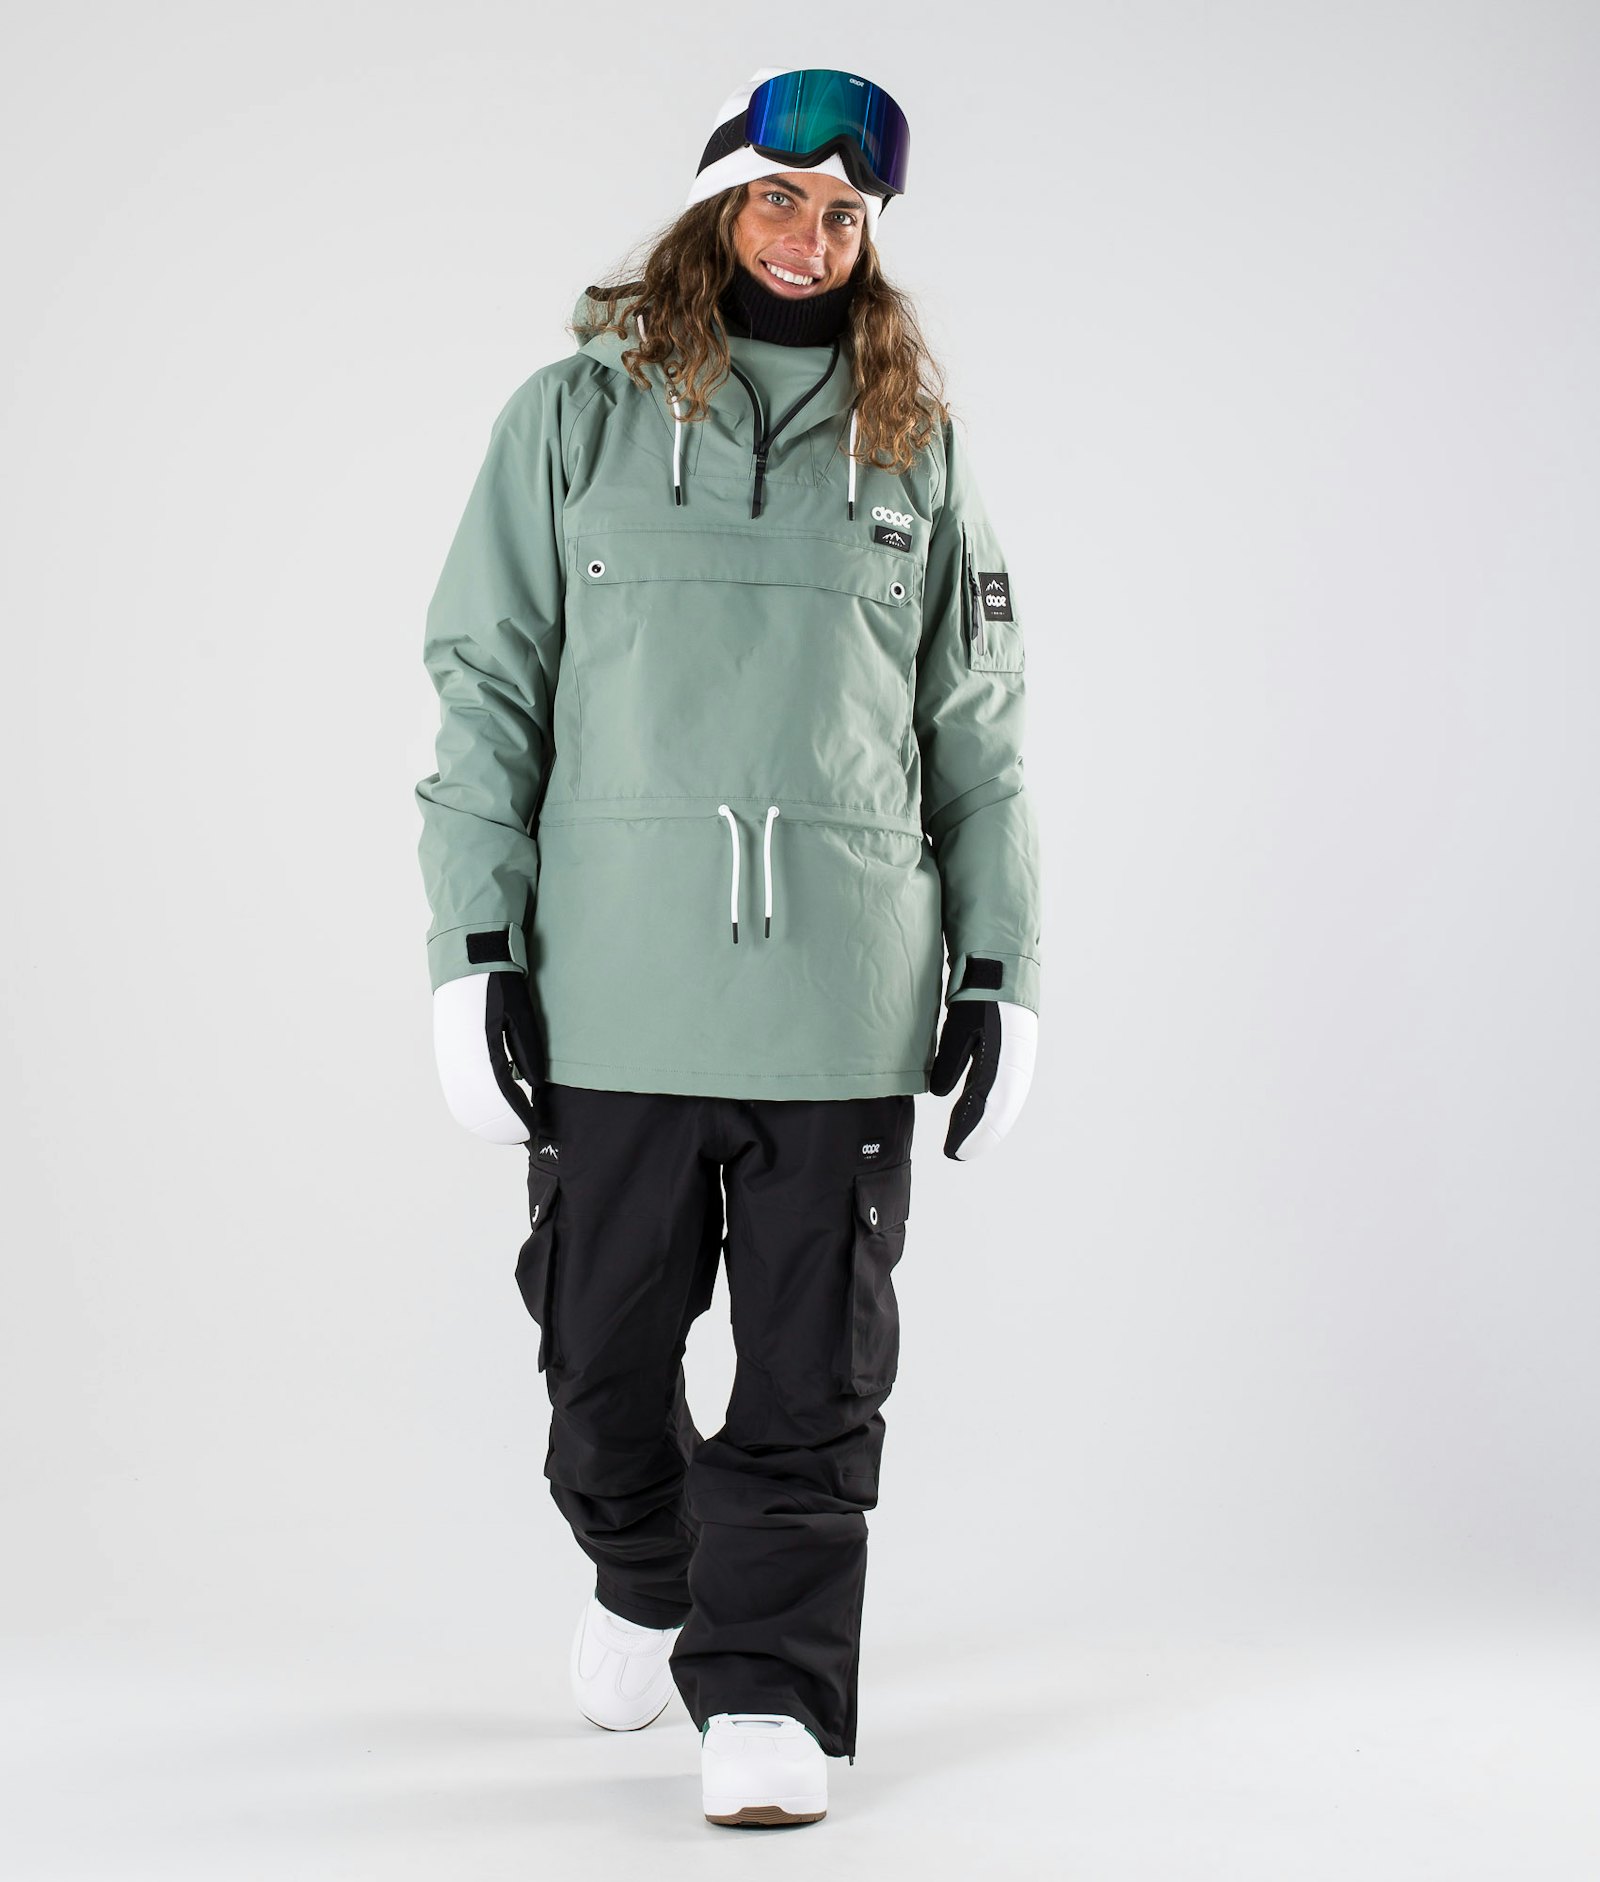 Annok 2019 Snowboardjacke Herren Faded Green